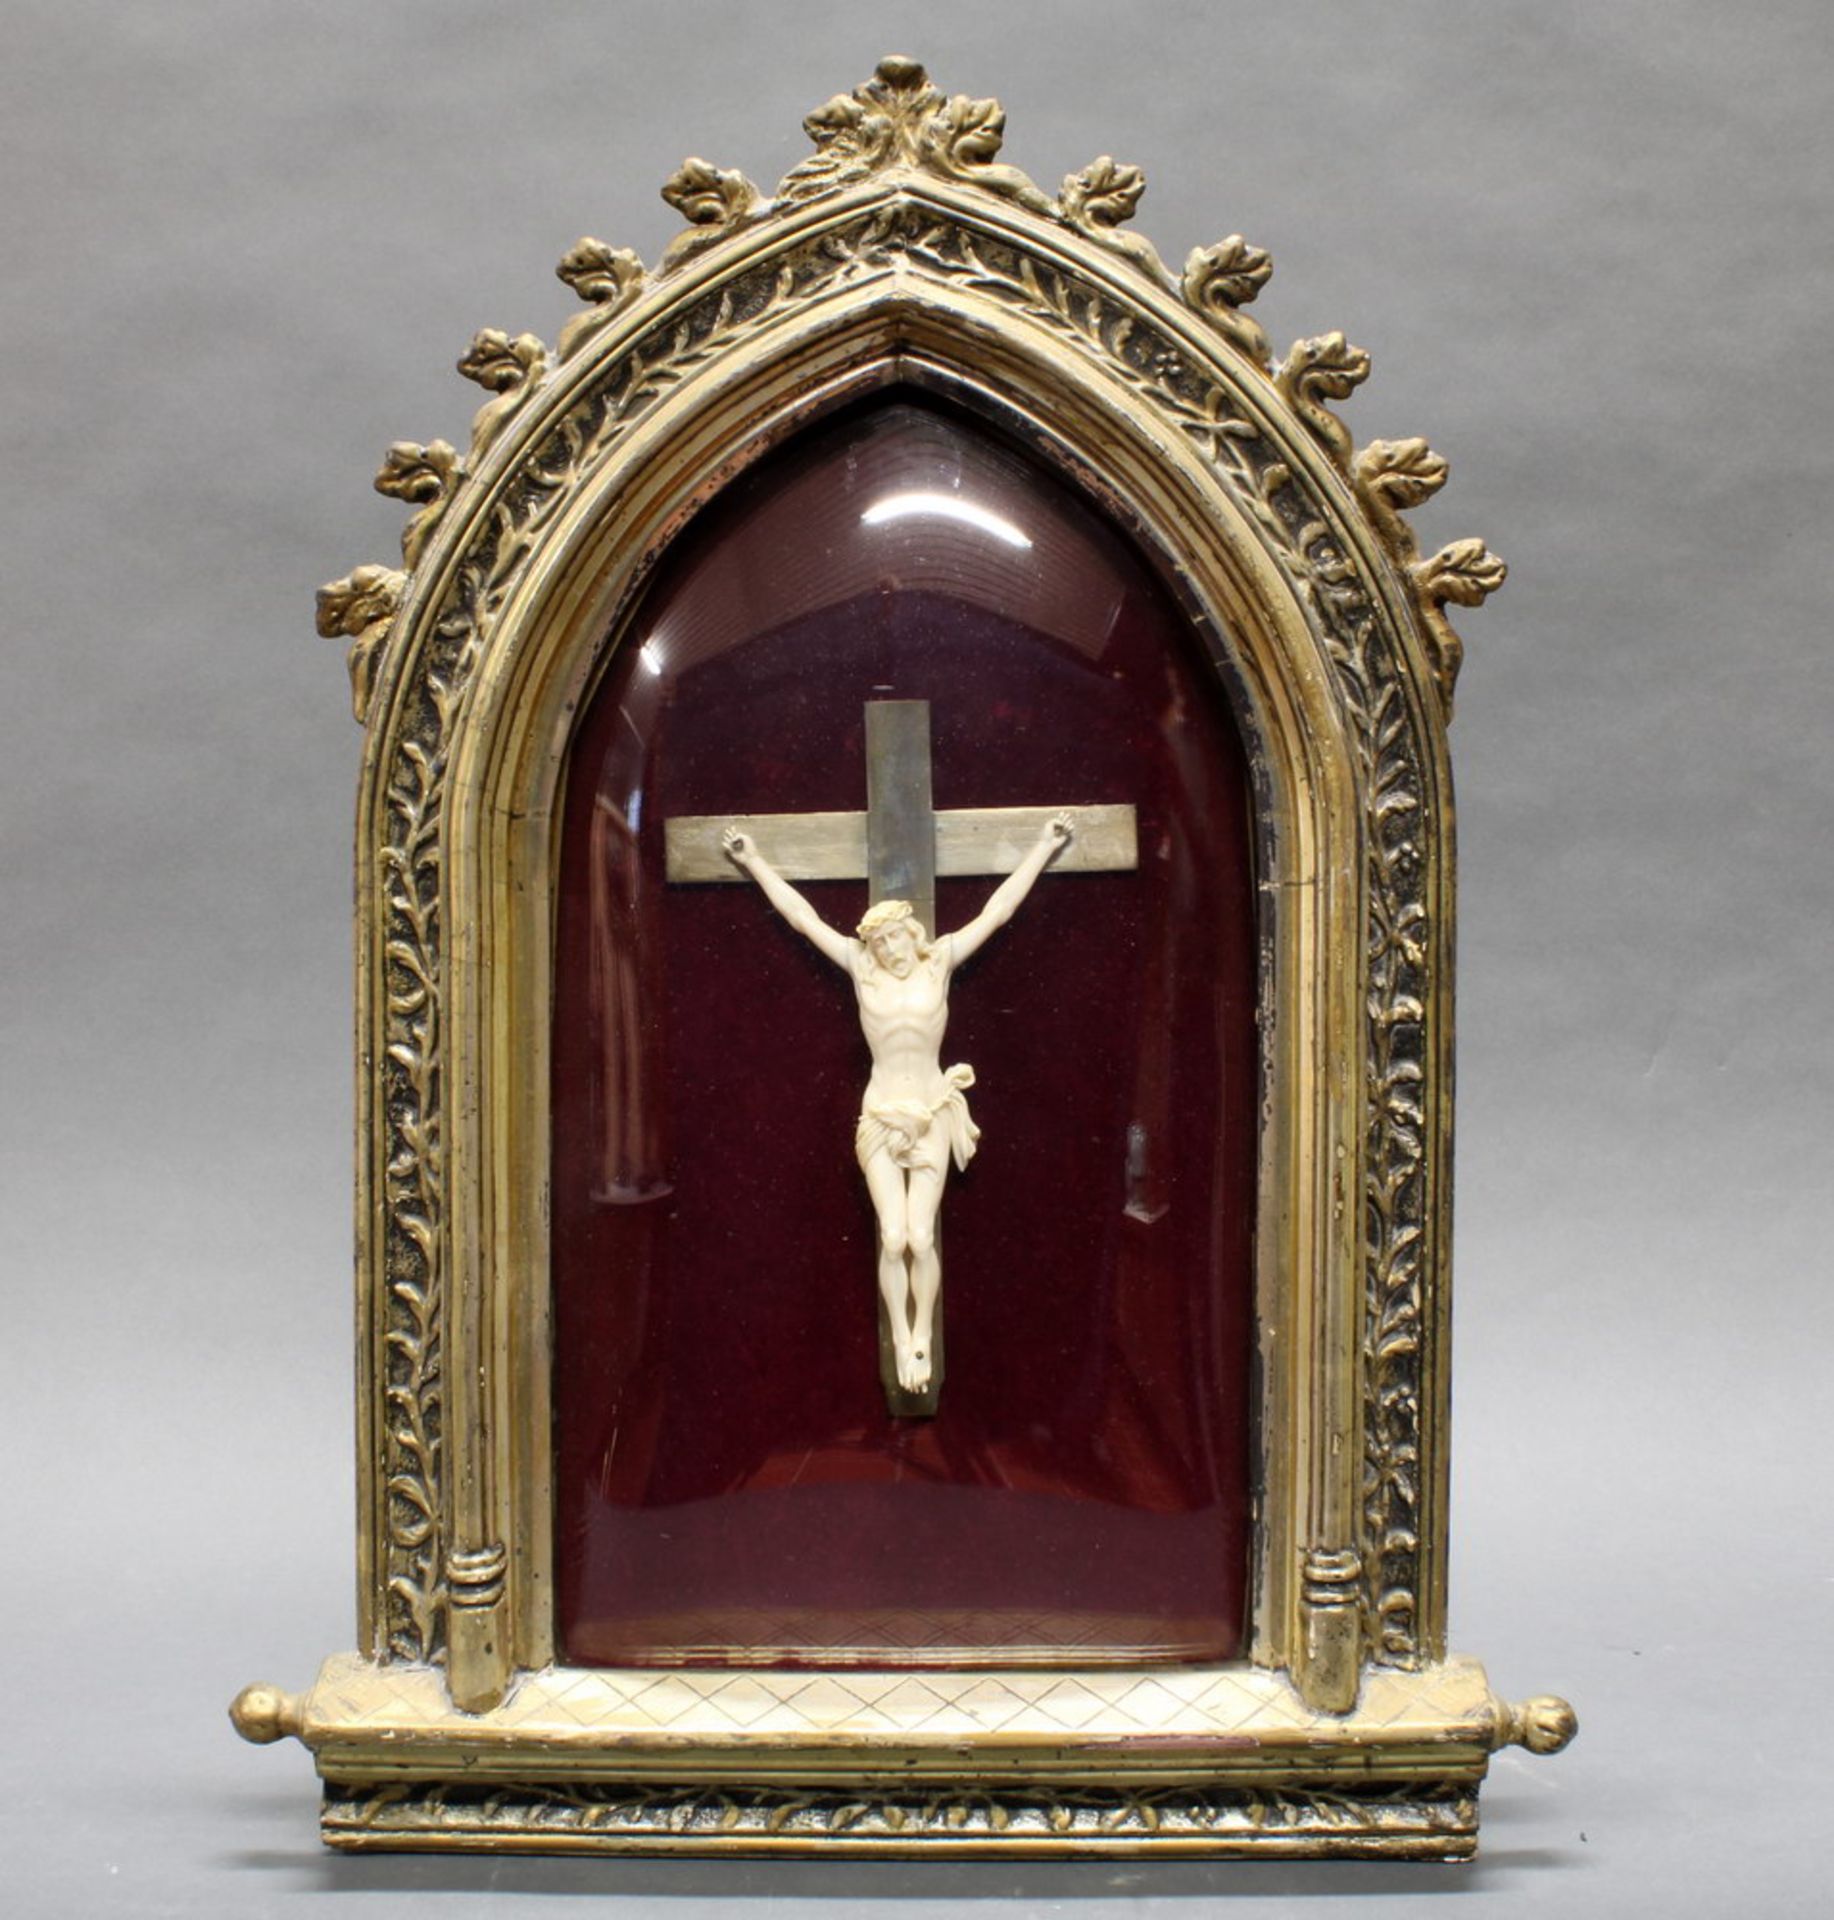 Korpus Christi, auf Holzkreuz, Elfenbein, 17 cm hoch, 19. Jh./Anfang 20. Jh., aufwändig unter